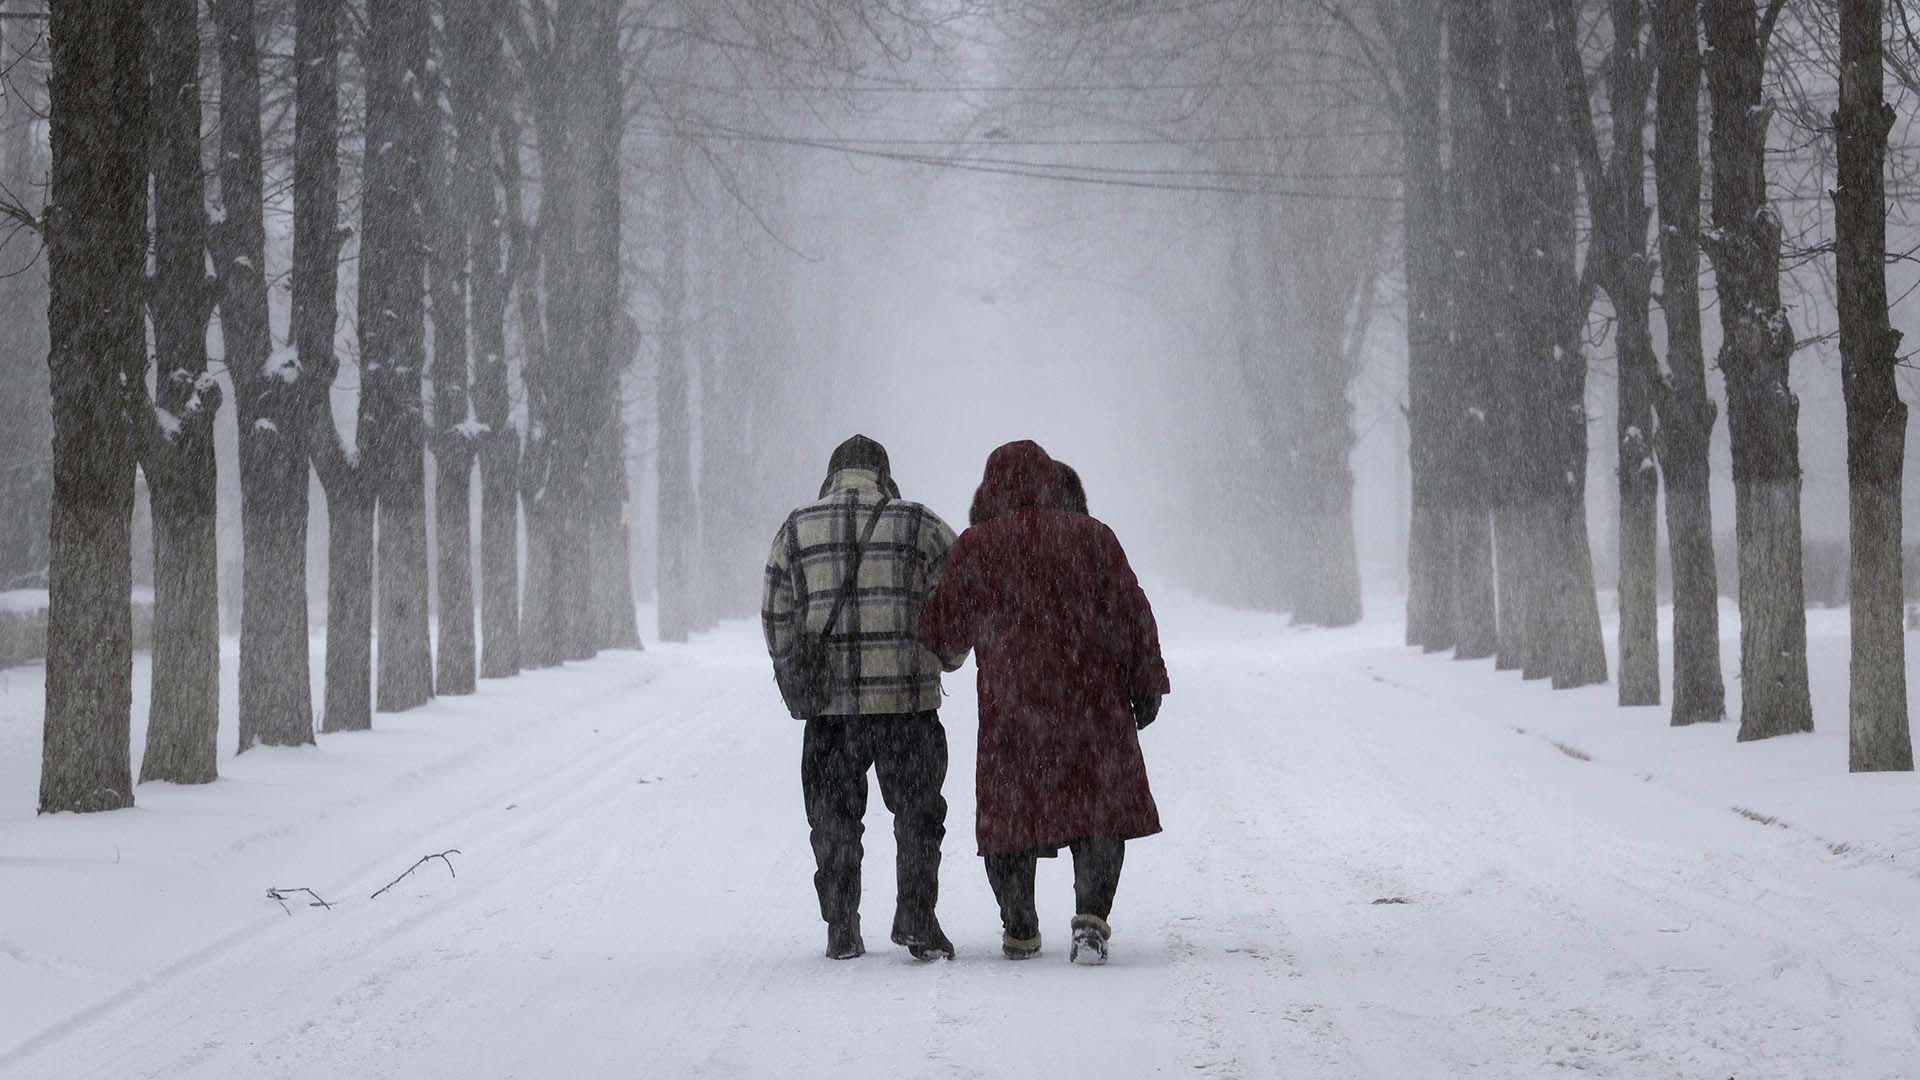 El matrimonio de Kolya y Olya, de 57 años, camina bajo una tormenta de nieve mientras el sonido de la artillería retumba a su alrededor el 12 de febrero de 2023 en Chasiv Yar, Ucrania, en la región oriental del Donbás.